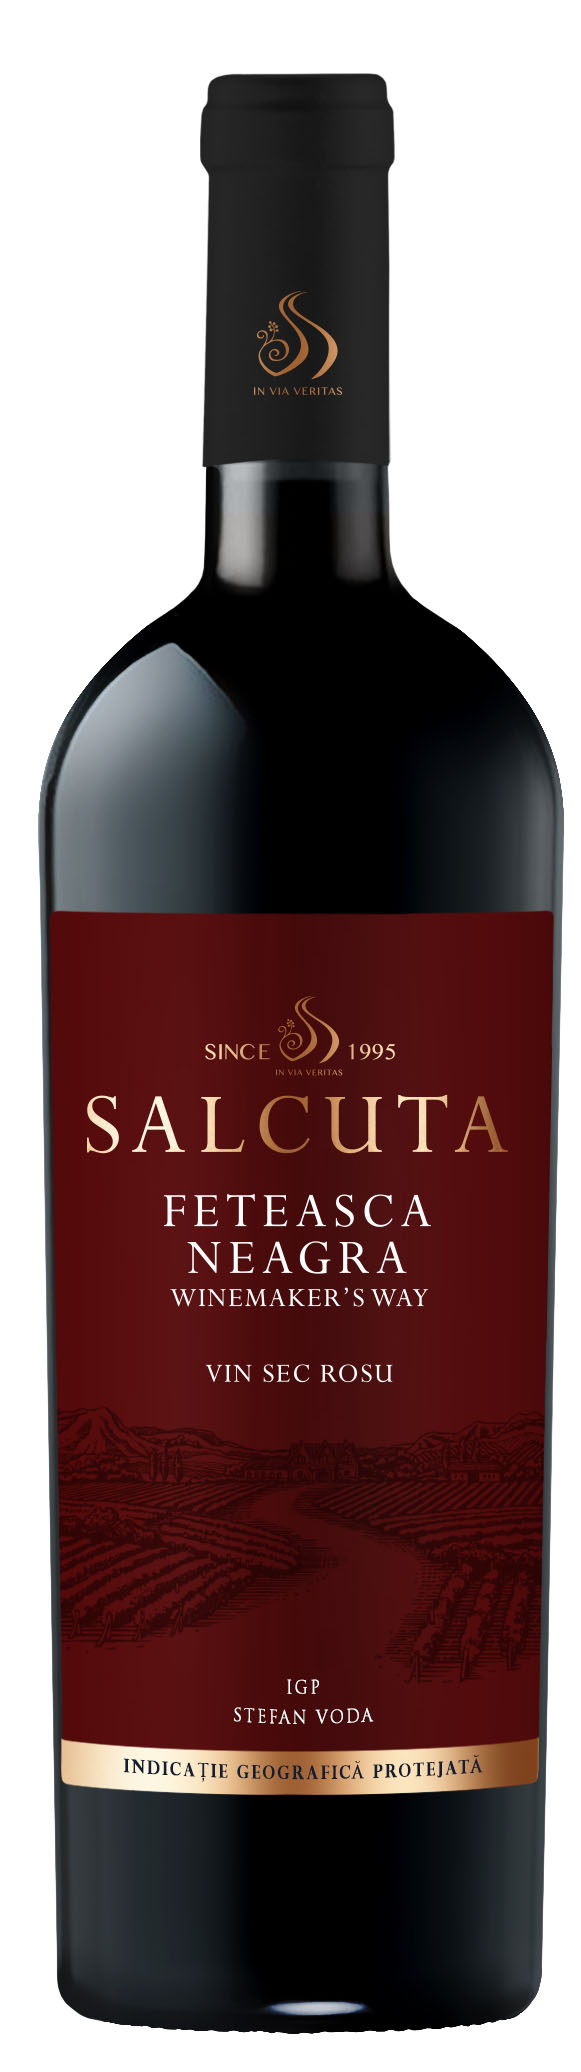 Salcuta Winemakers Way Feteasca Neagra 2018